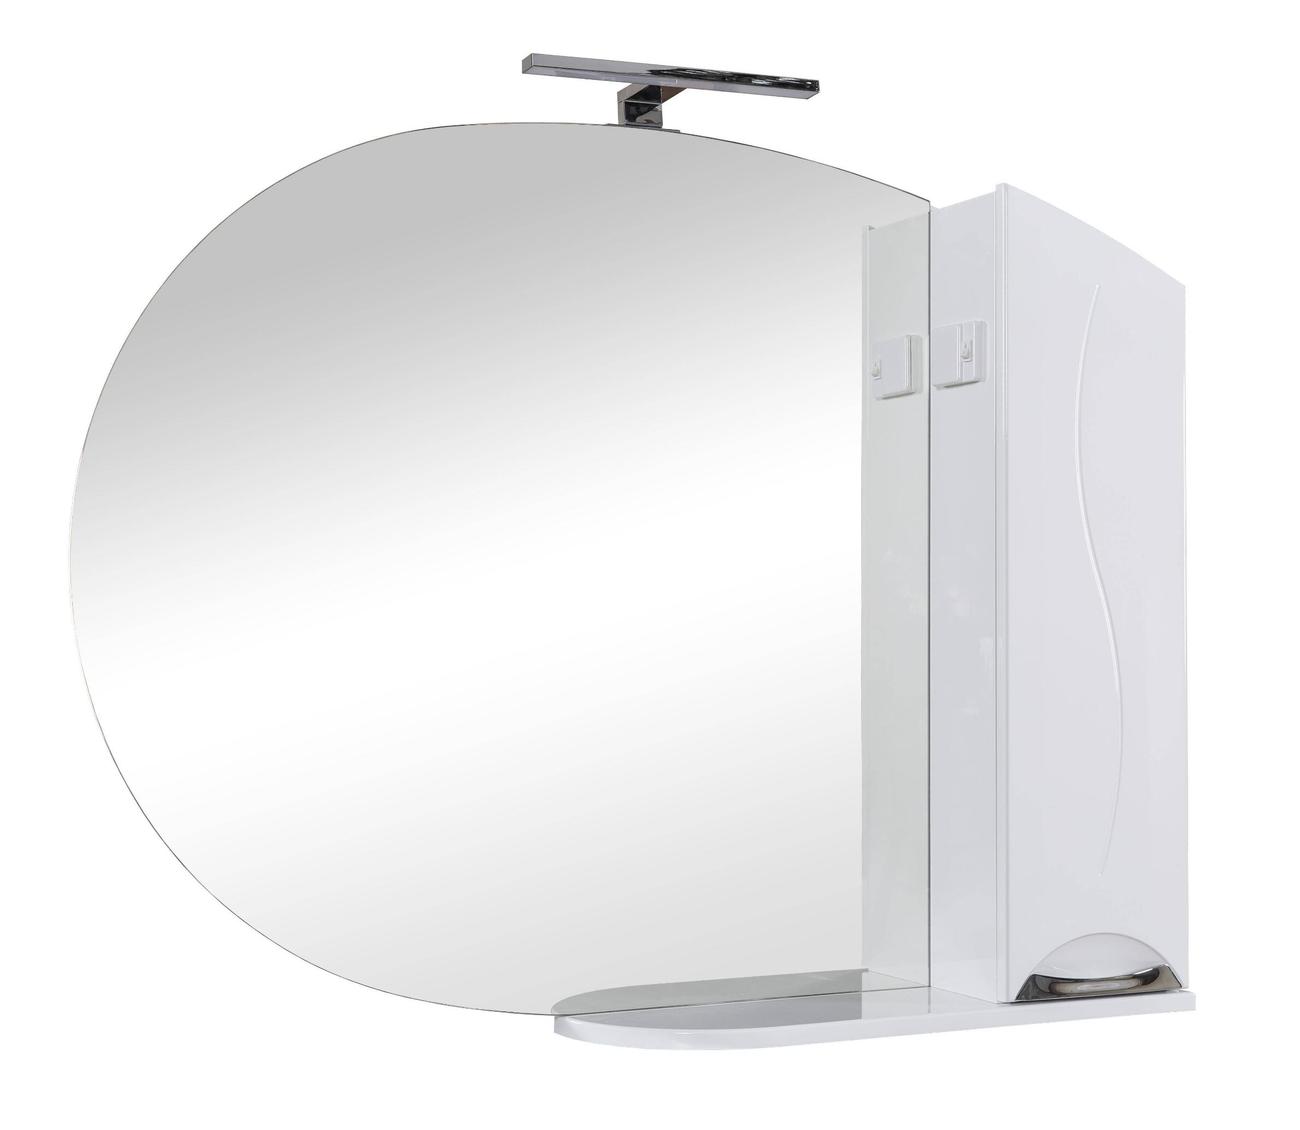 АКВА РОДОС Глория 105 Зеркало (P) для ванной комнаты 1079*870*170 в комплекте с подсветкой Omega LED